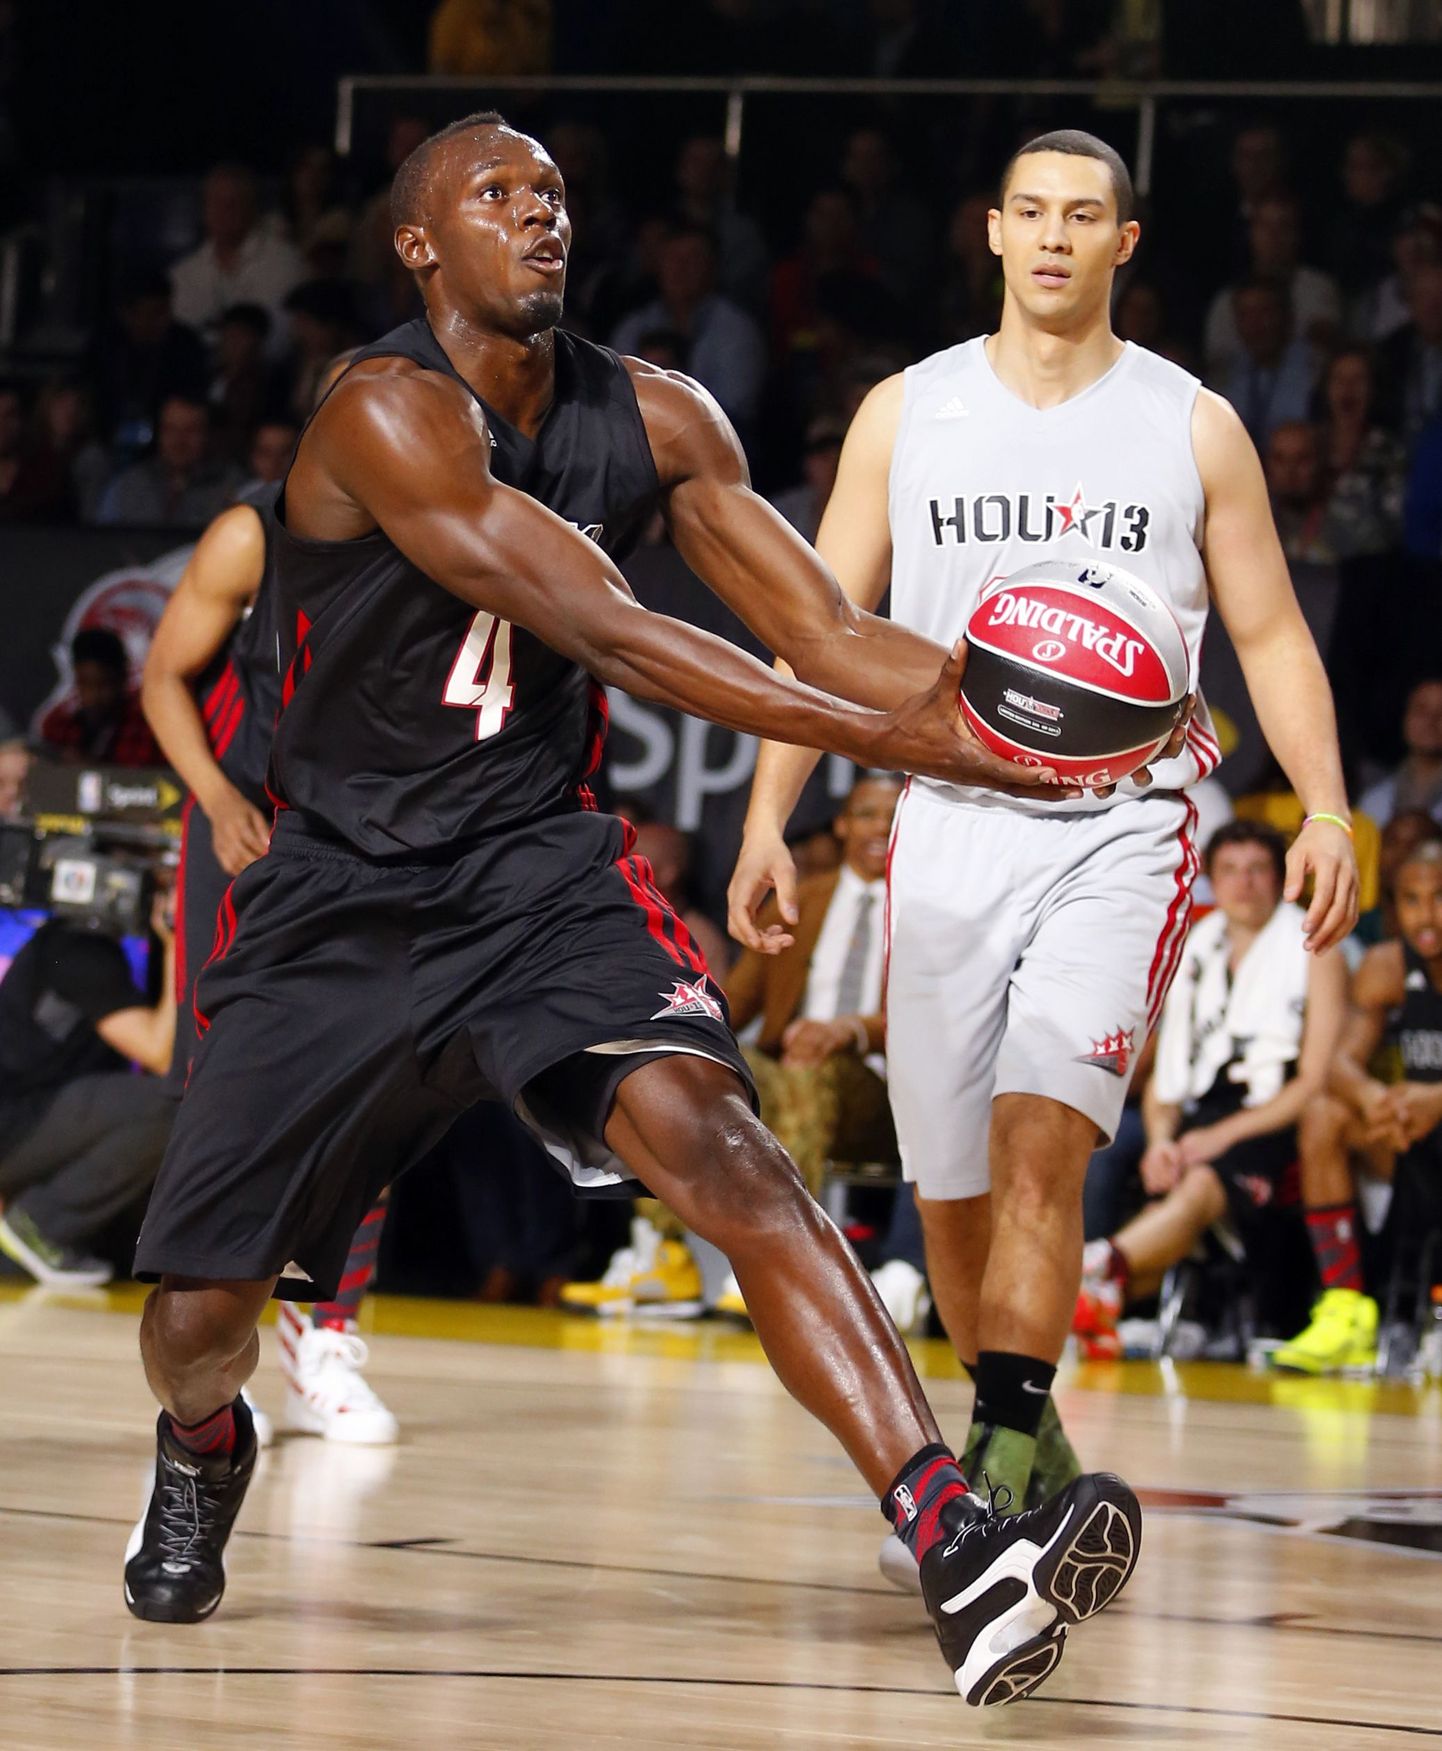 Usain Bolt NBA Tähtede mängu nädalavahetusel Kuulsuste mängus.